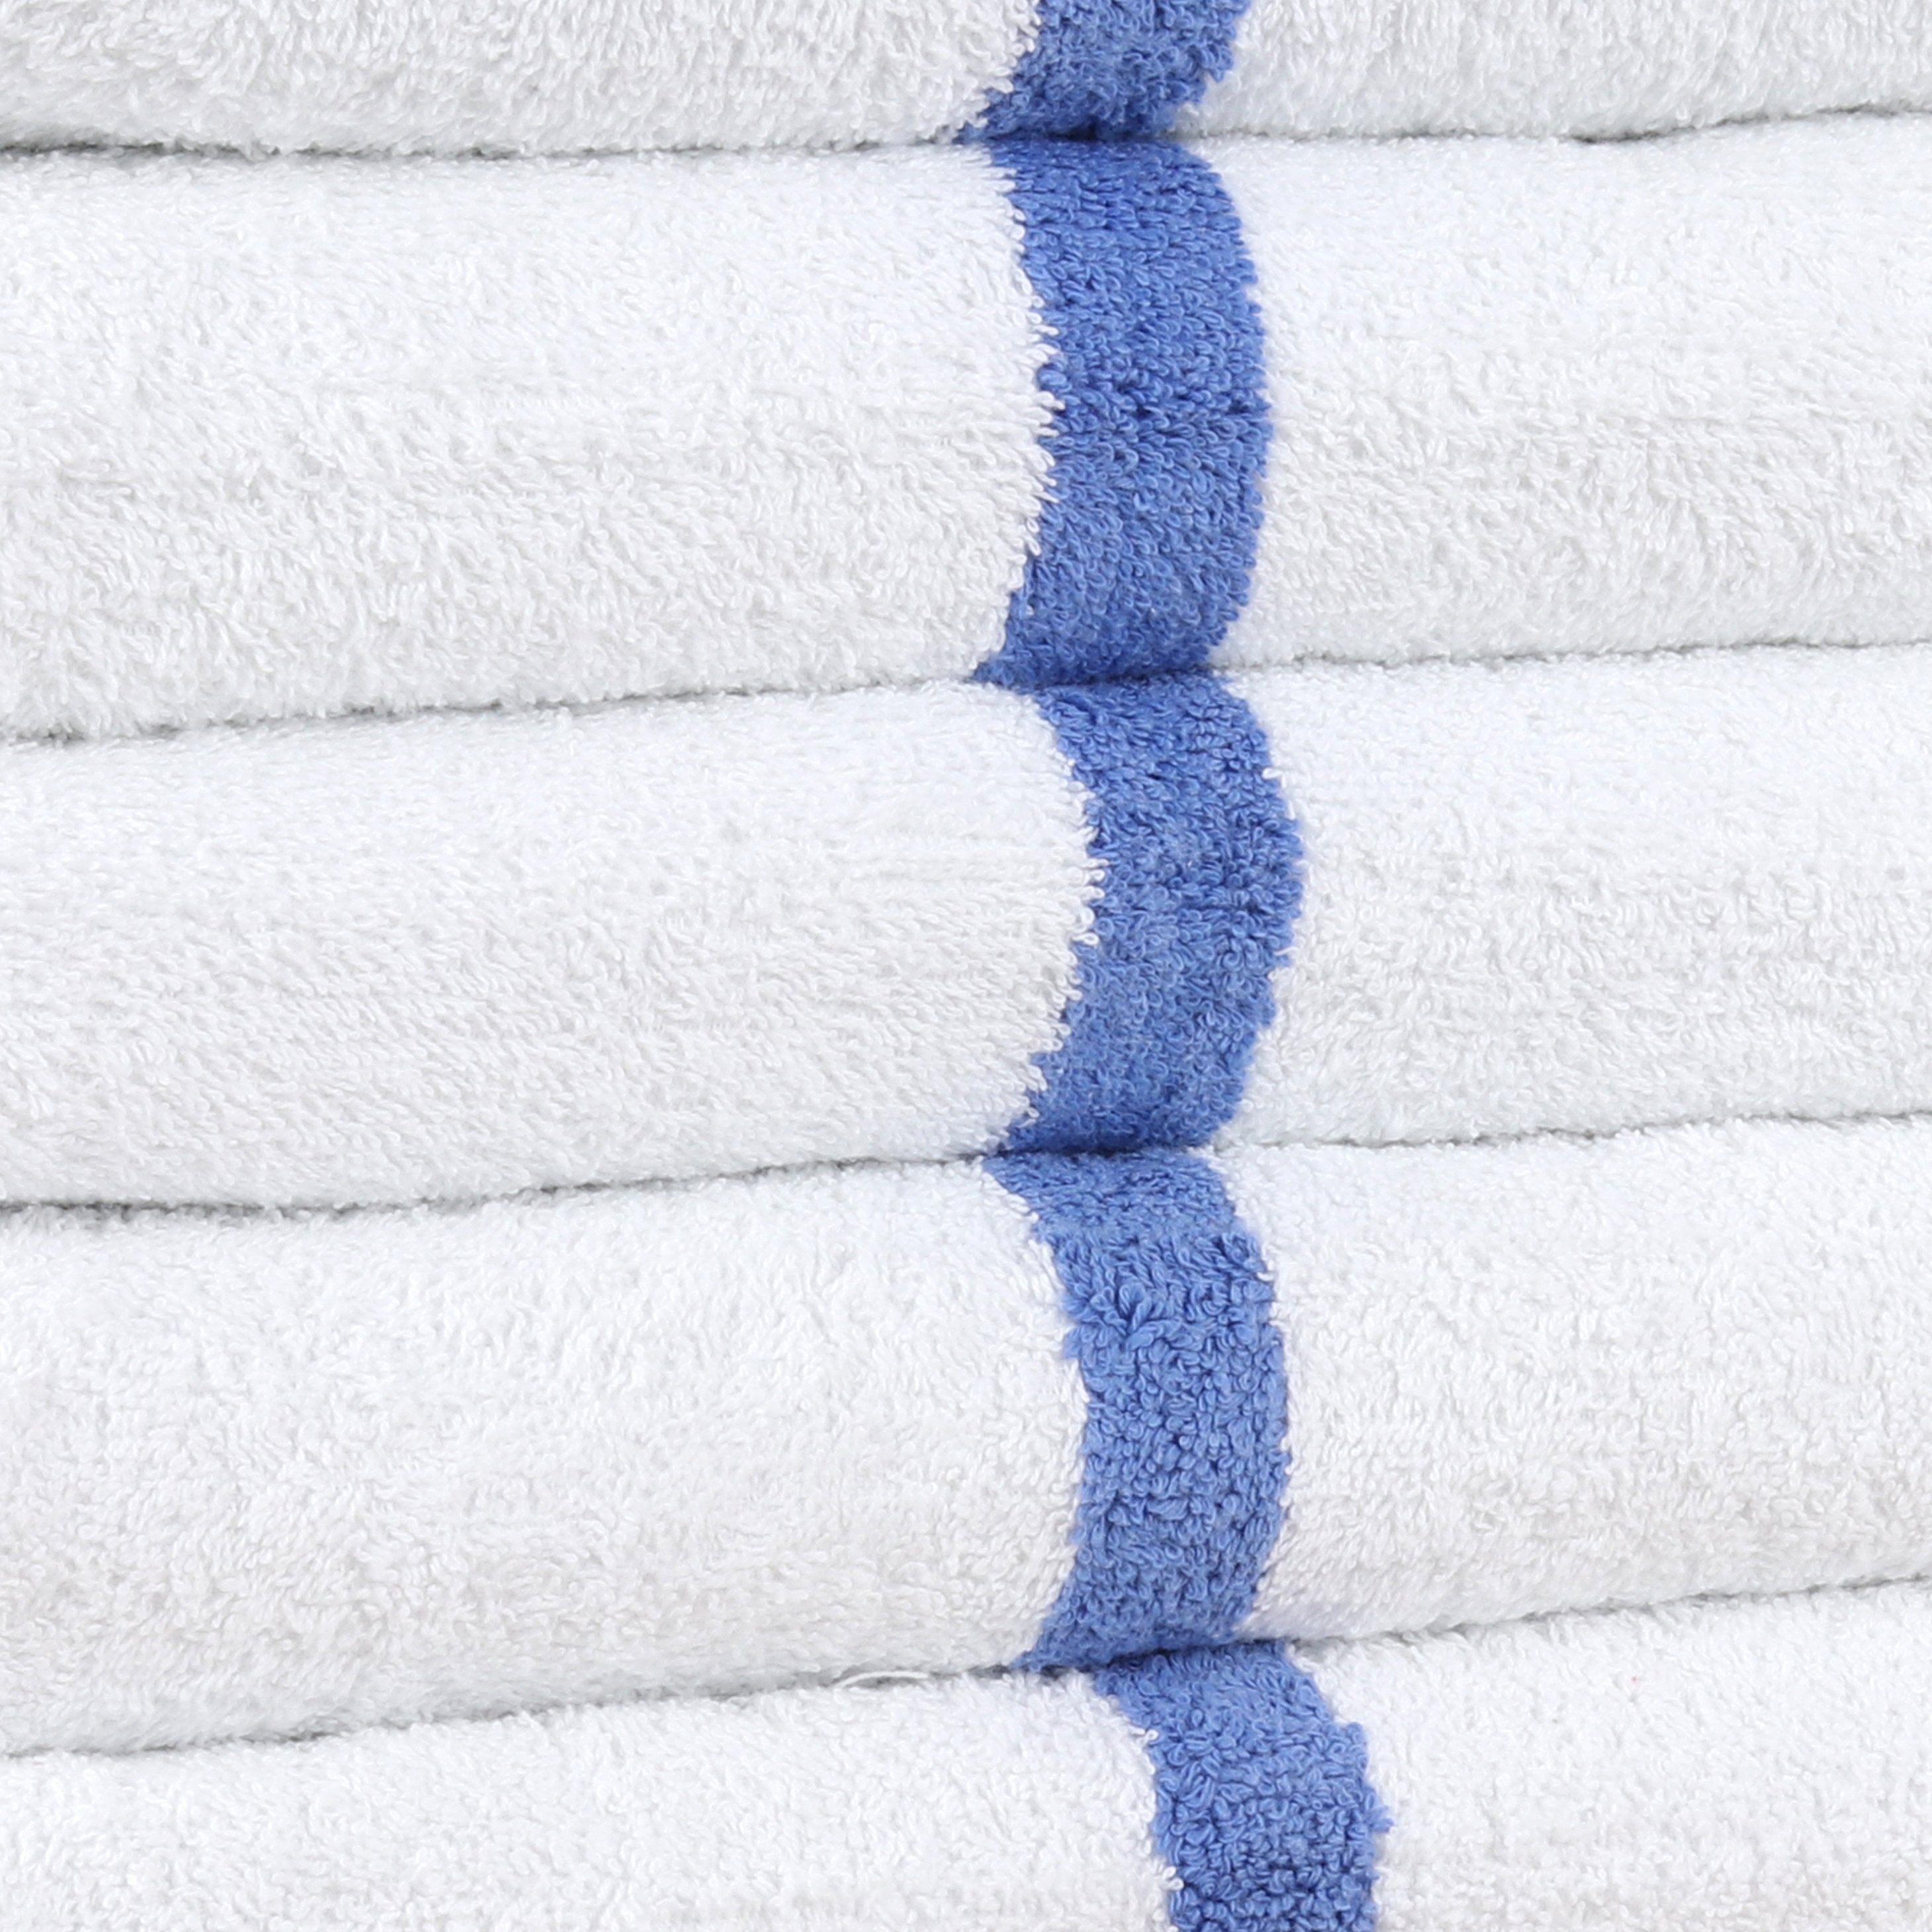 20X40 Wholesale White Hotel Bath Towels - Towel Super Center